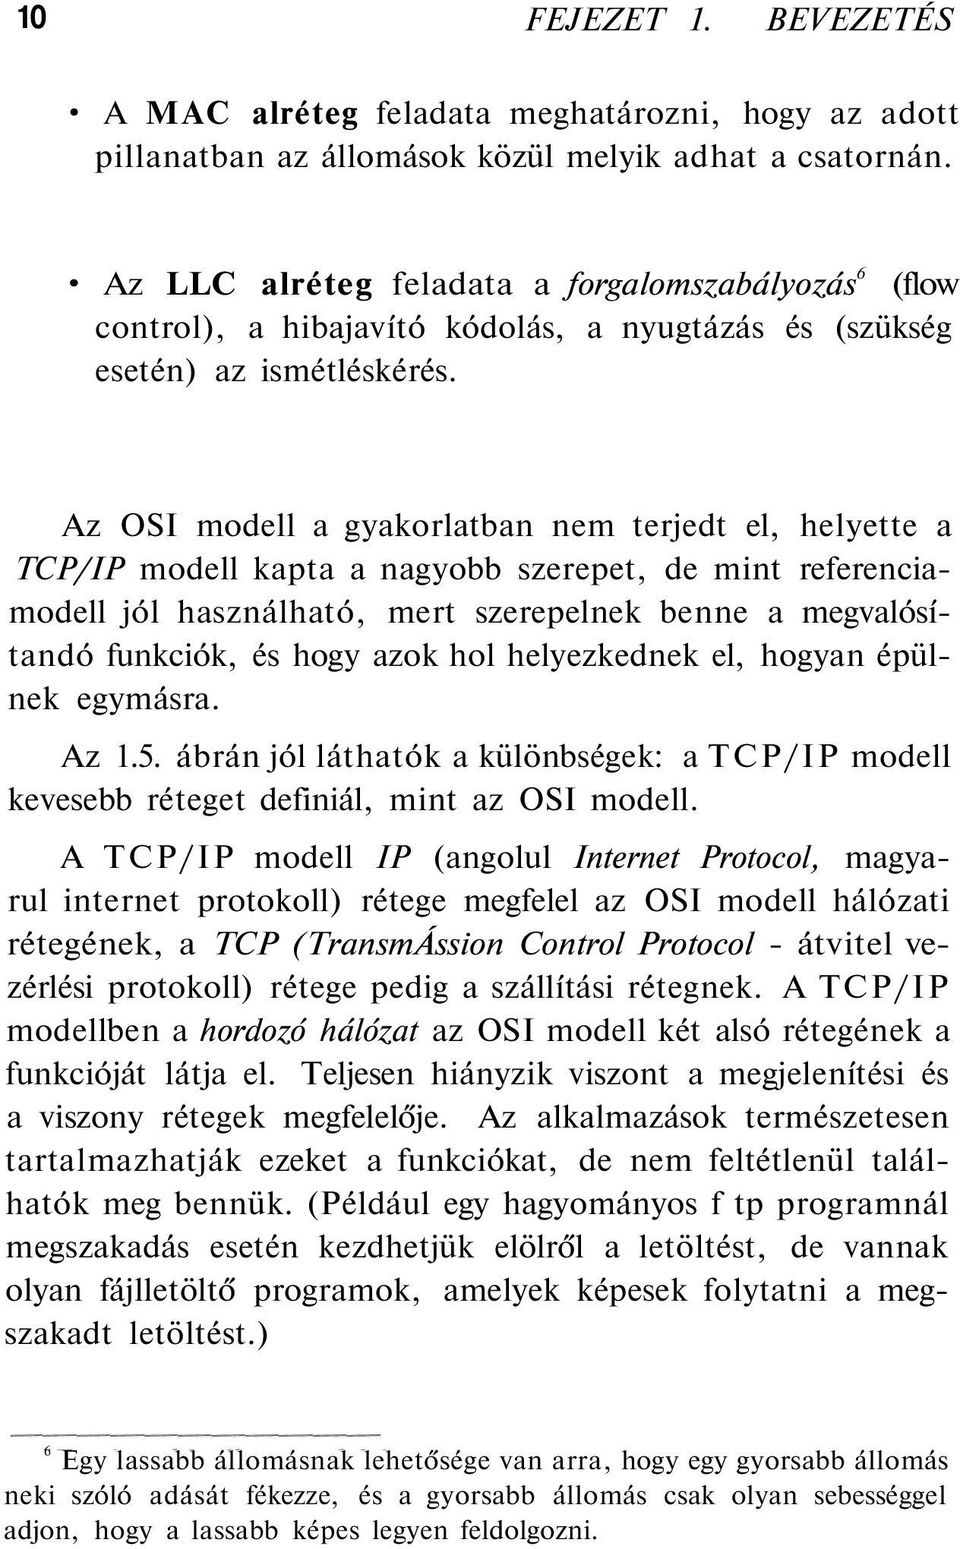 Az OSI modell a gyakorlatban nem terjedt el, helyette a TCP/IP modell kapta a nagyobb szerepet, de mint referenciamodell jól használható, mert szerepelnek benne a megvalósítandó funkciók, és hogy